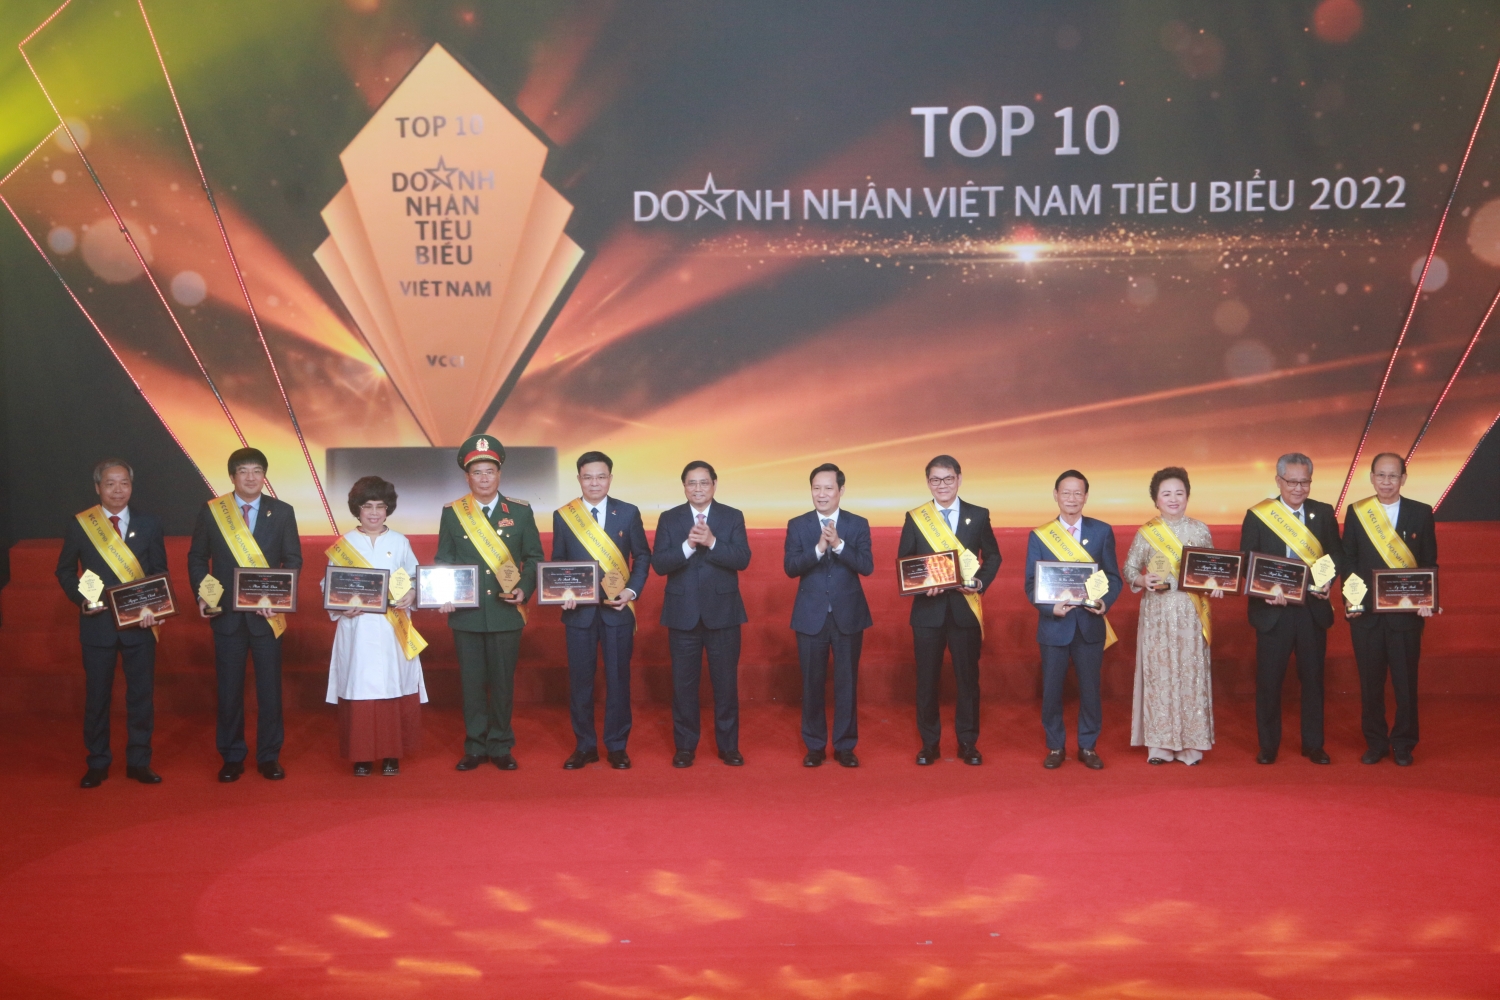 Tổng giám đốc Petrovietnam Lê Mạnh Hùng được vinh danh TOP 10 Doanh nhân tiêu biểu nhất Việt Nam năm 2022'